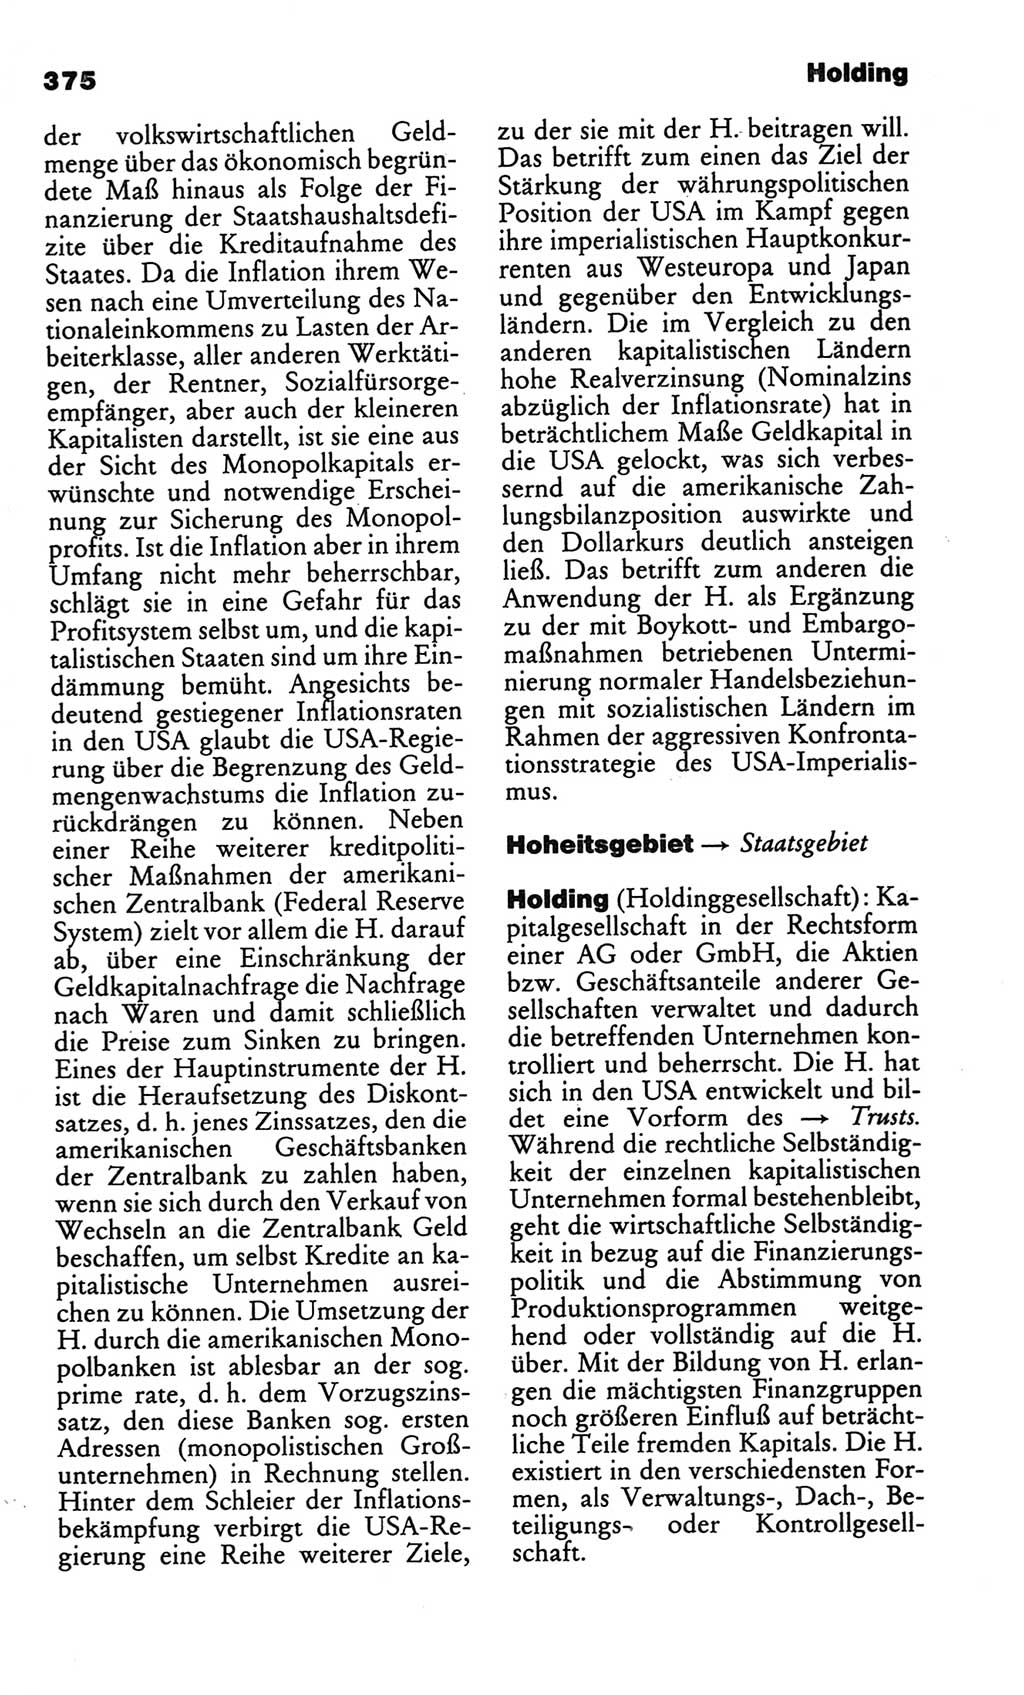 Kleines politisches Wörterbuch [Deutsche Demokratische Republik (DDR)] 1986, Seite 375 (Kl. pol. Wb. DDR 1986, S. 375)